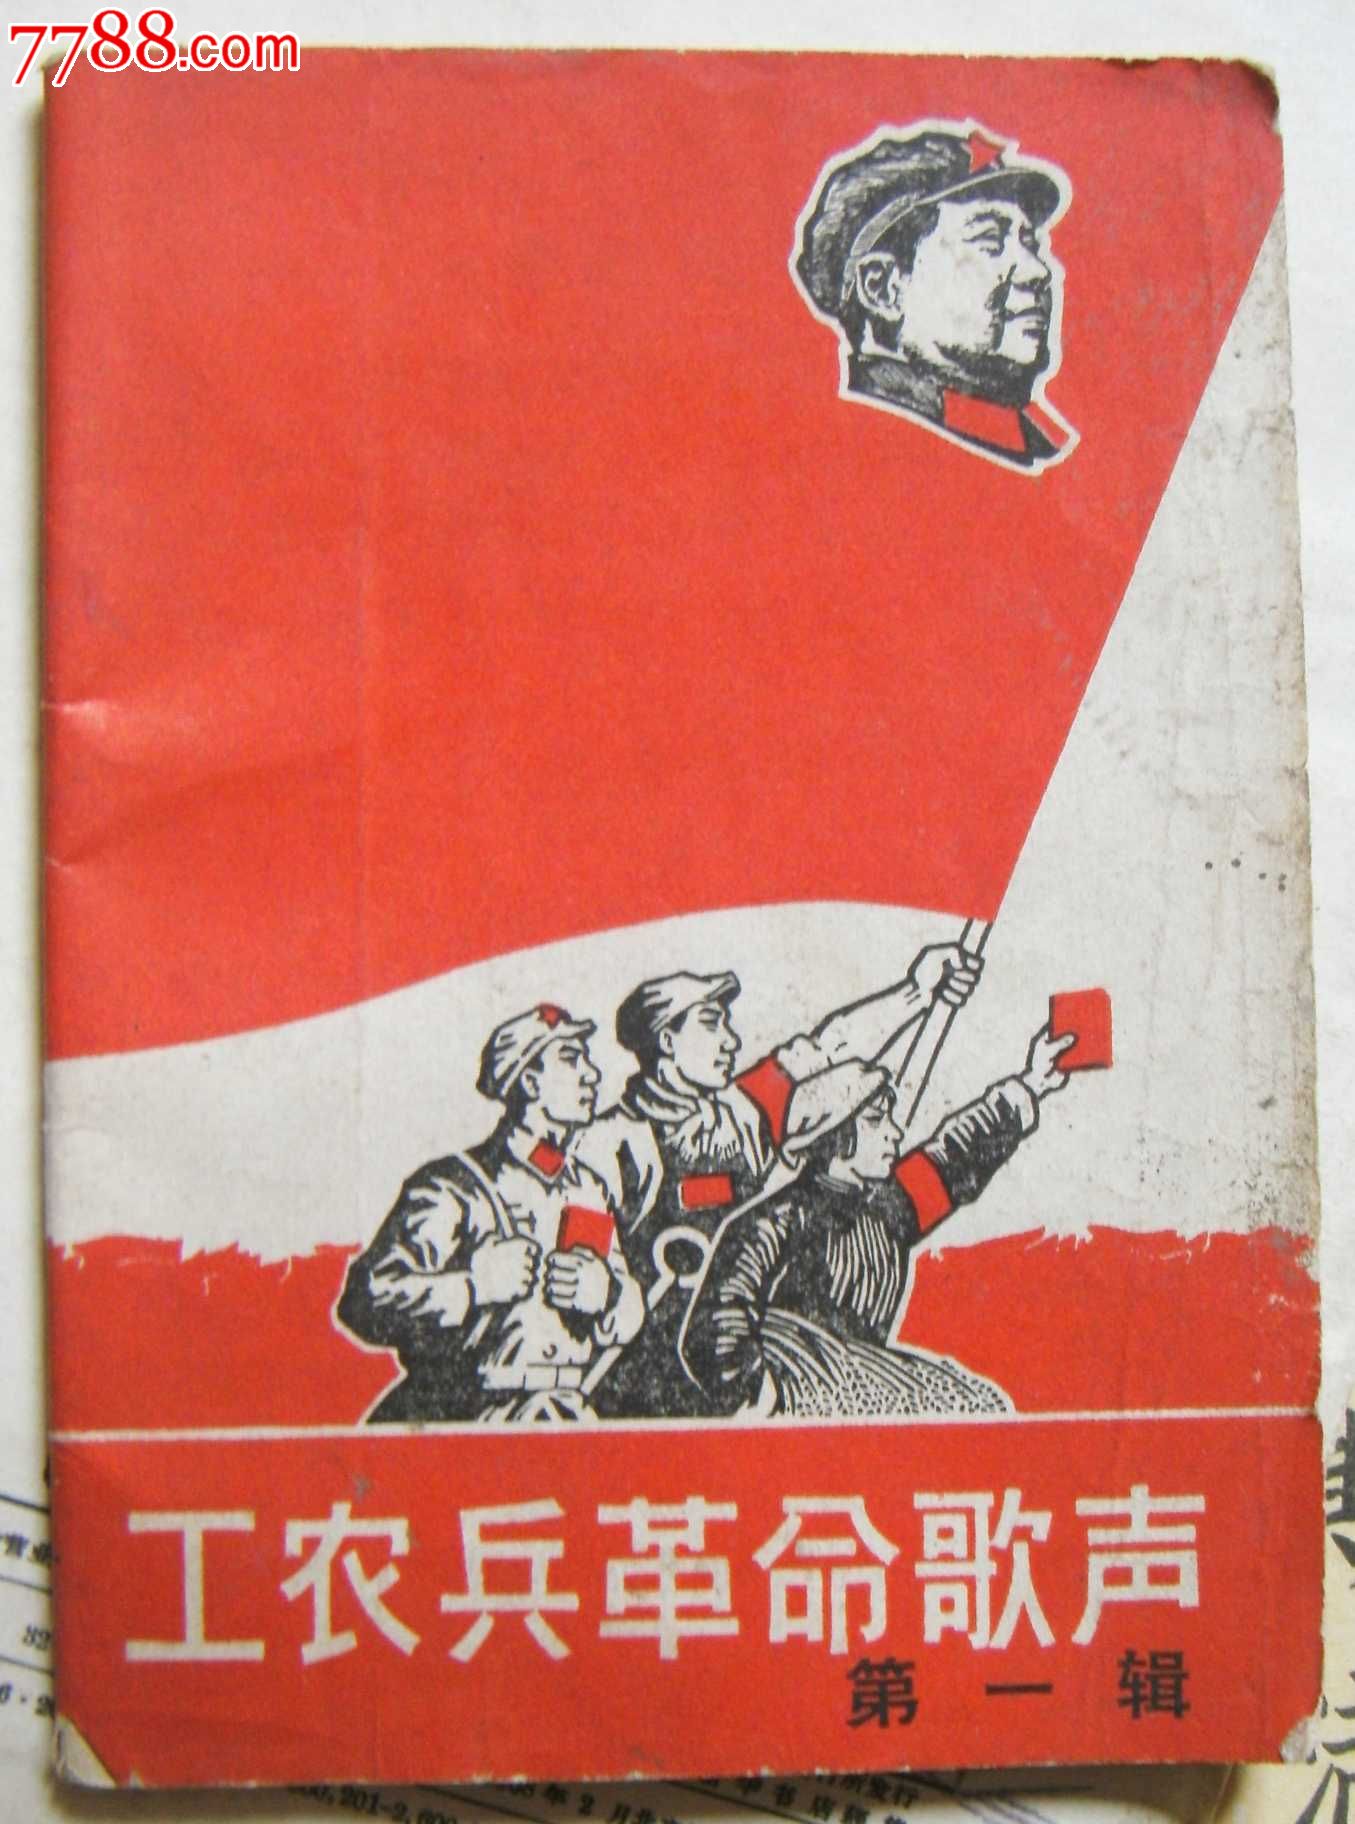 67年创刊号(工农兵革命歌声)里面有编者创刊时